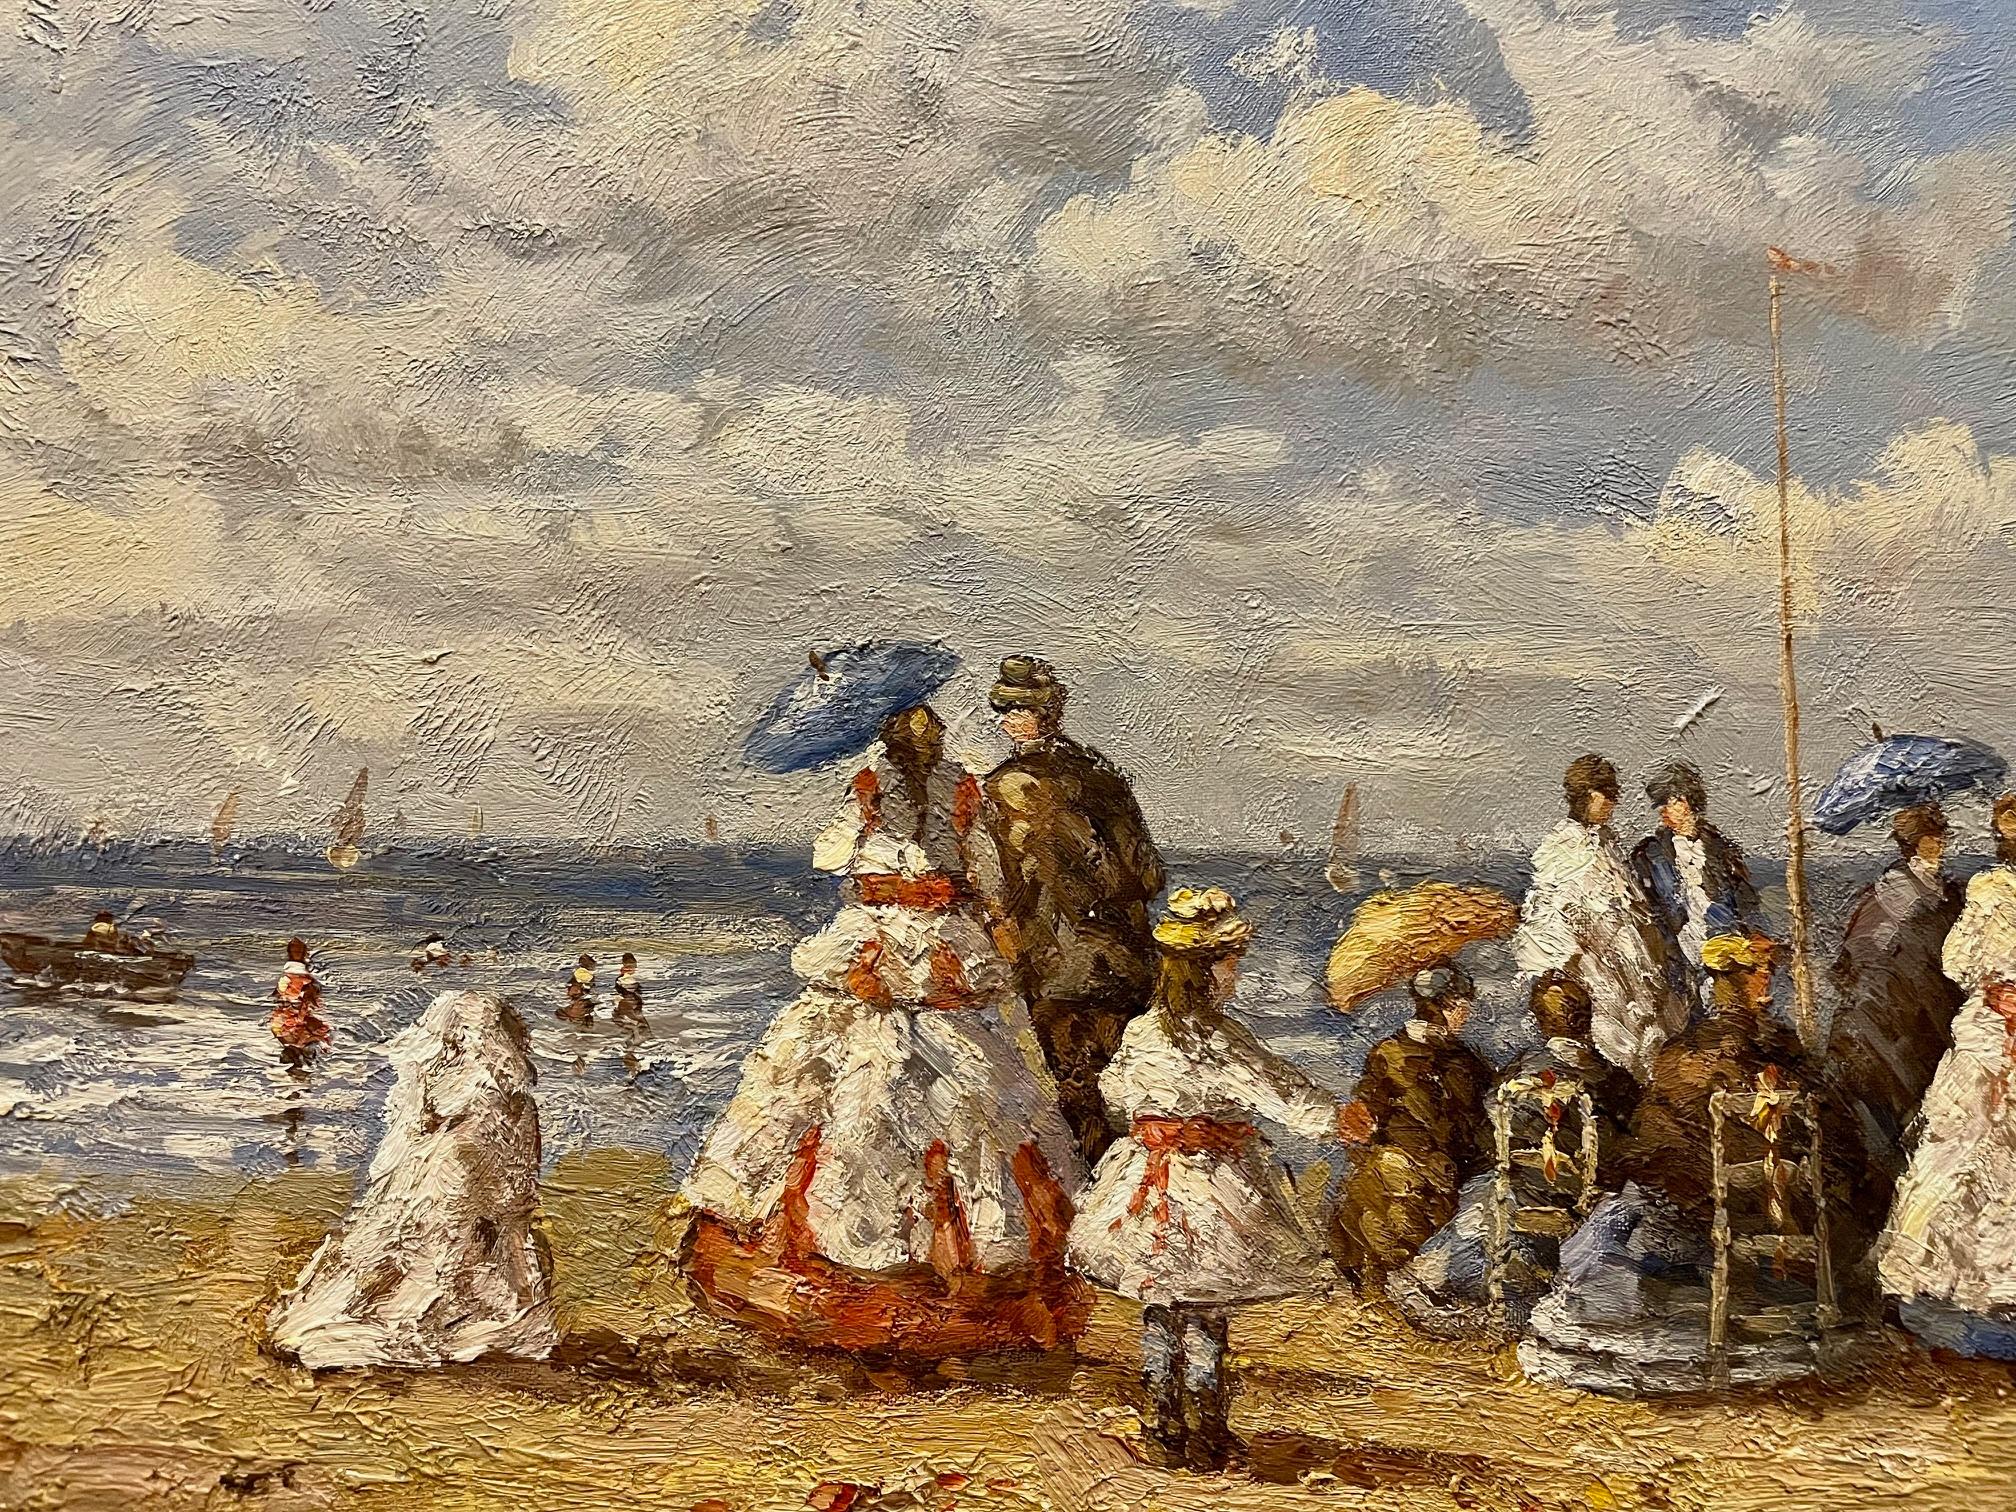 Scène de plage édouardienne richement colorée et vibrante, peinture à l'huile britannique sur toile de style impressionniste, présentée dans un cadre doré contemporain. La peinture à l'huile est surélevée et texturée, soulevant les sables de la